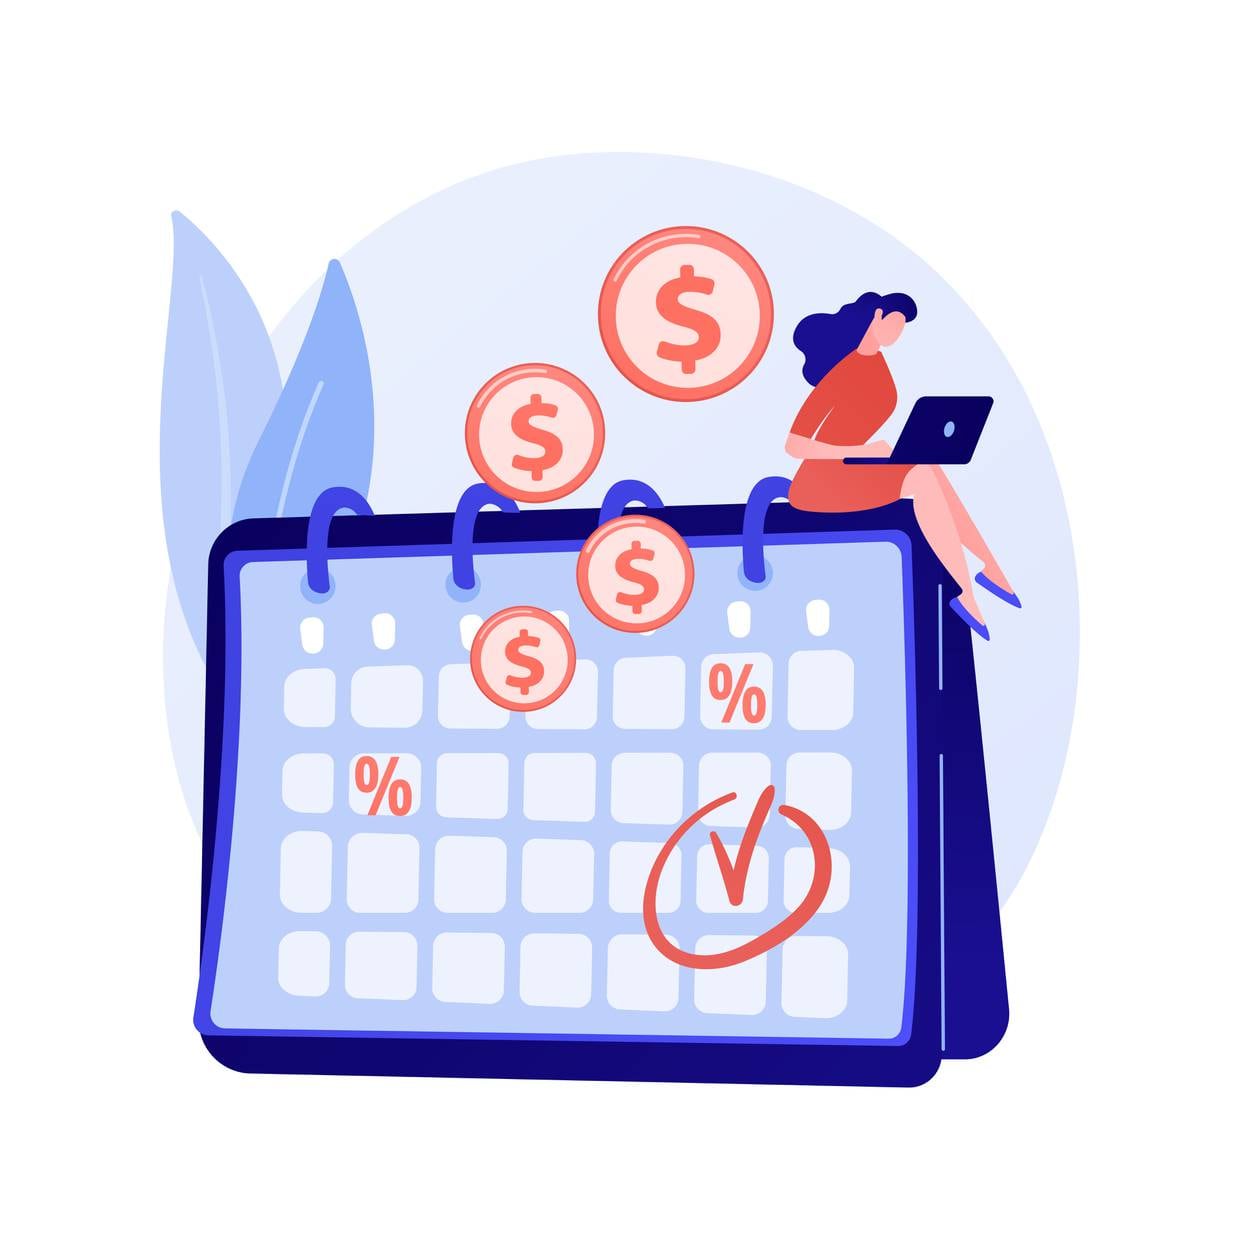 La Condusef dio a conocer, a través de su revista oficial "Proteja su Dinero", cómo el usuario puede utilizar la herramienta del calendario de gastos para lo largo del año